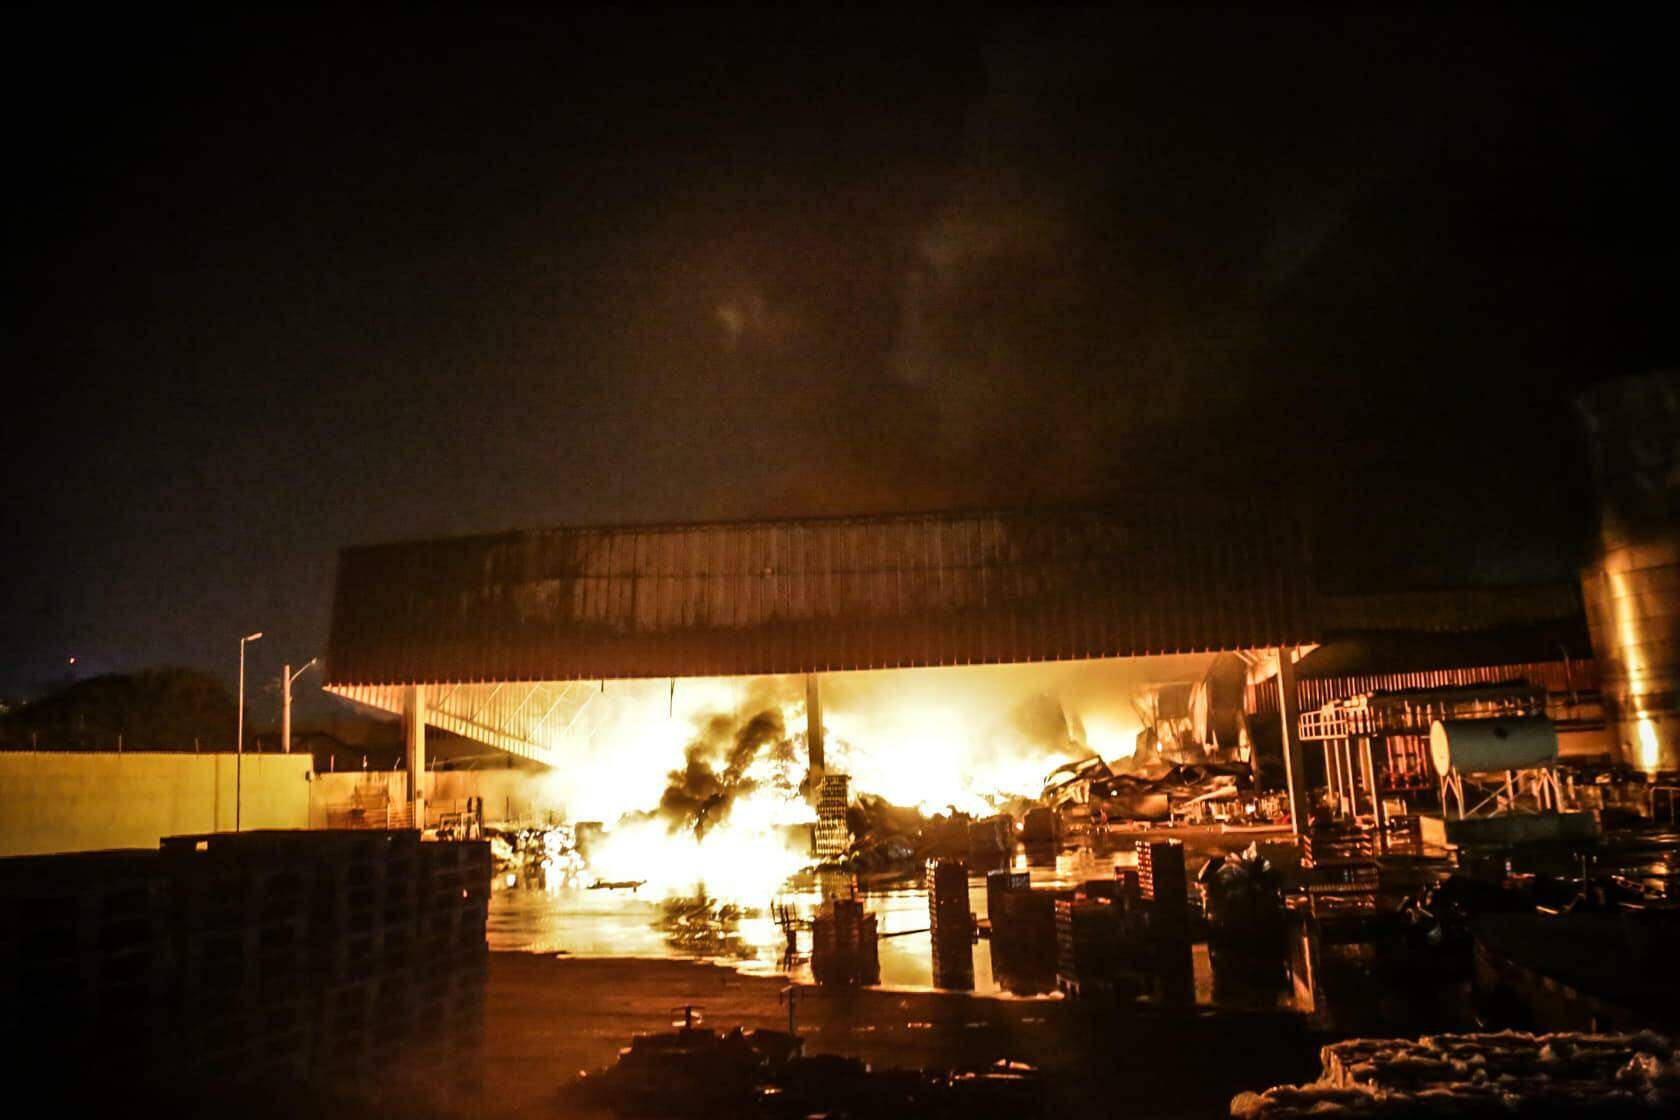 GALERIA: Confira as imagens do incêndio de grandes proporções no Atacadão